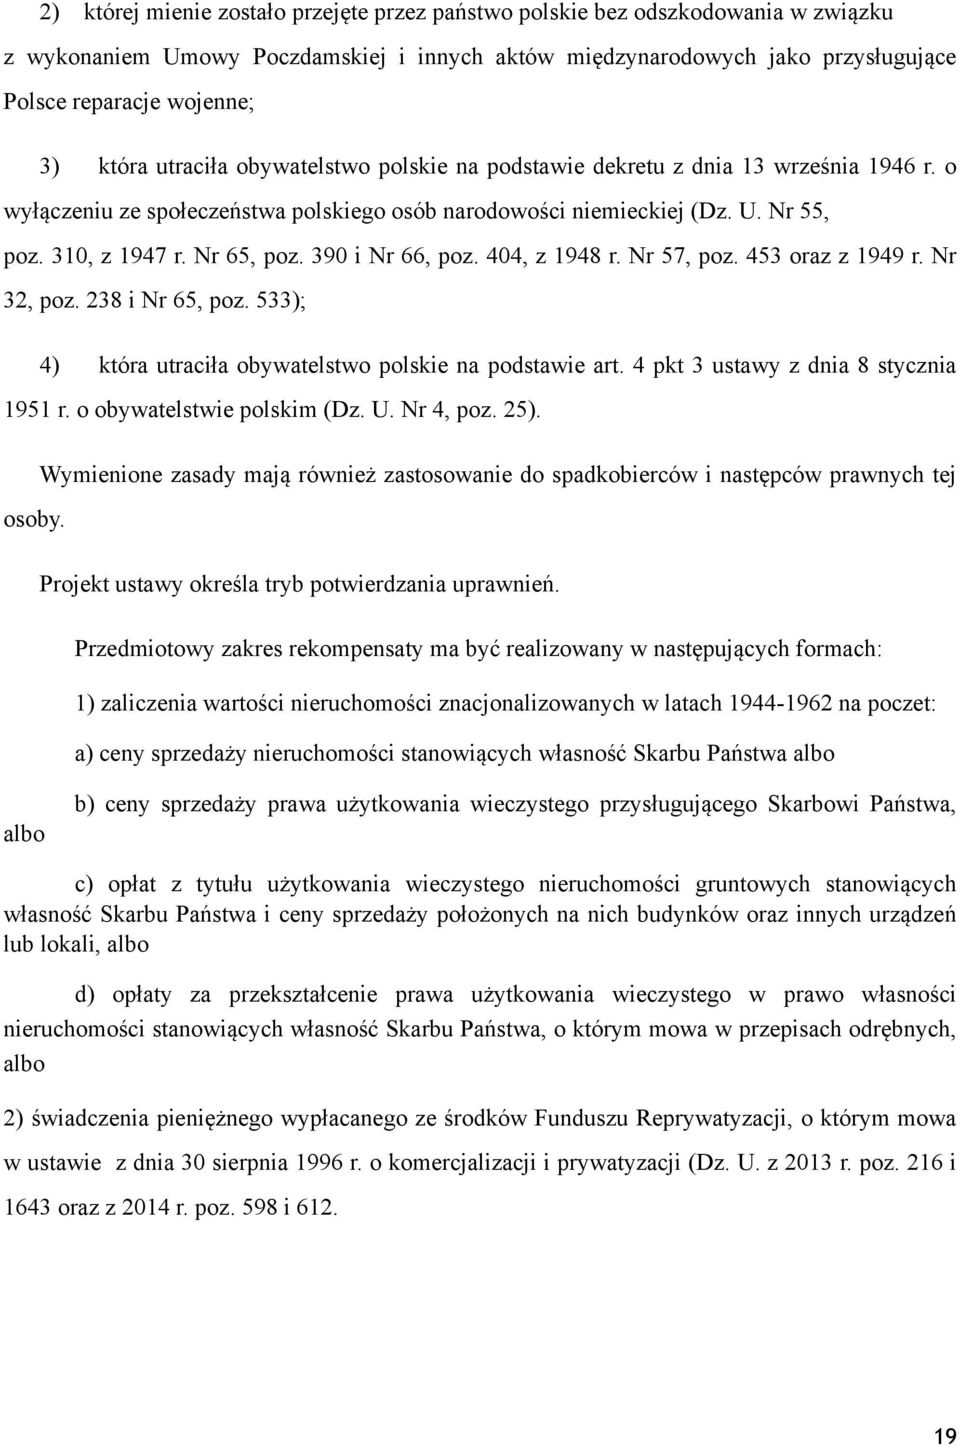 390 i Nr 66, poz. 404, z 1948 r. Nr 57, poz. 453 oraz z 1949 r. Nr 32, poz. 238 i Nr 65, poz. 533); 4) która utraciła obywatelstwo polskie na podstawie art. 4 pkt 3 ustawy z dnia 8 stycznia 1951 r.